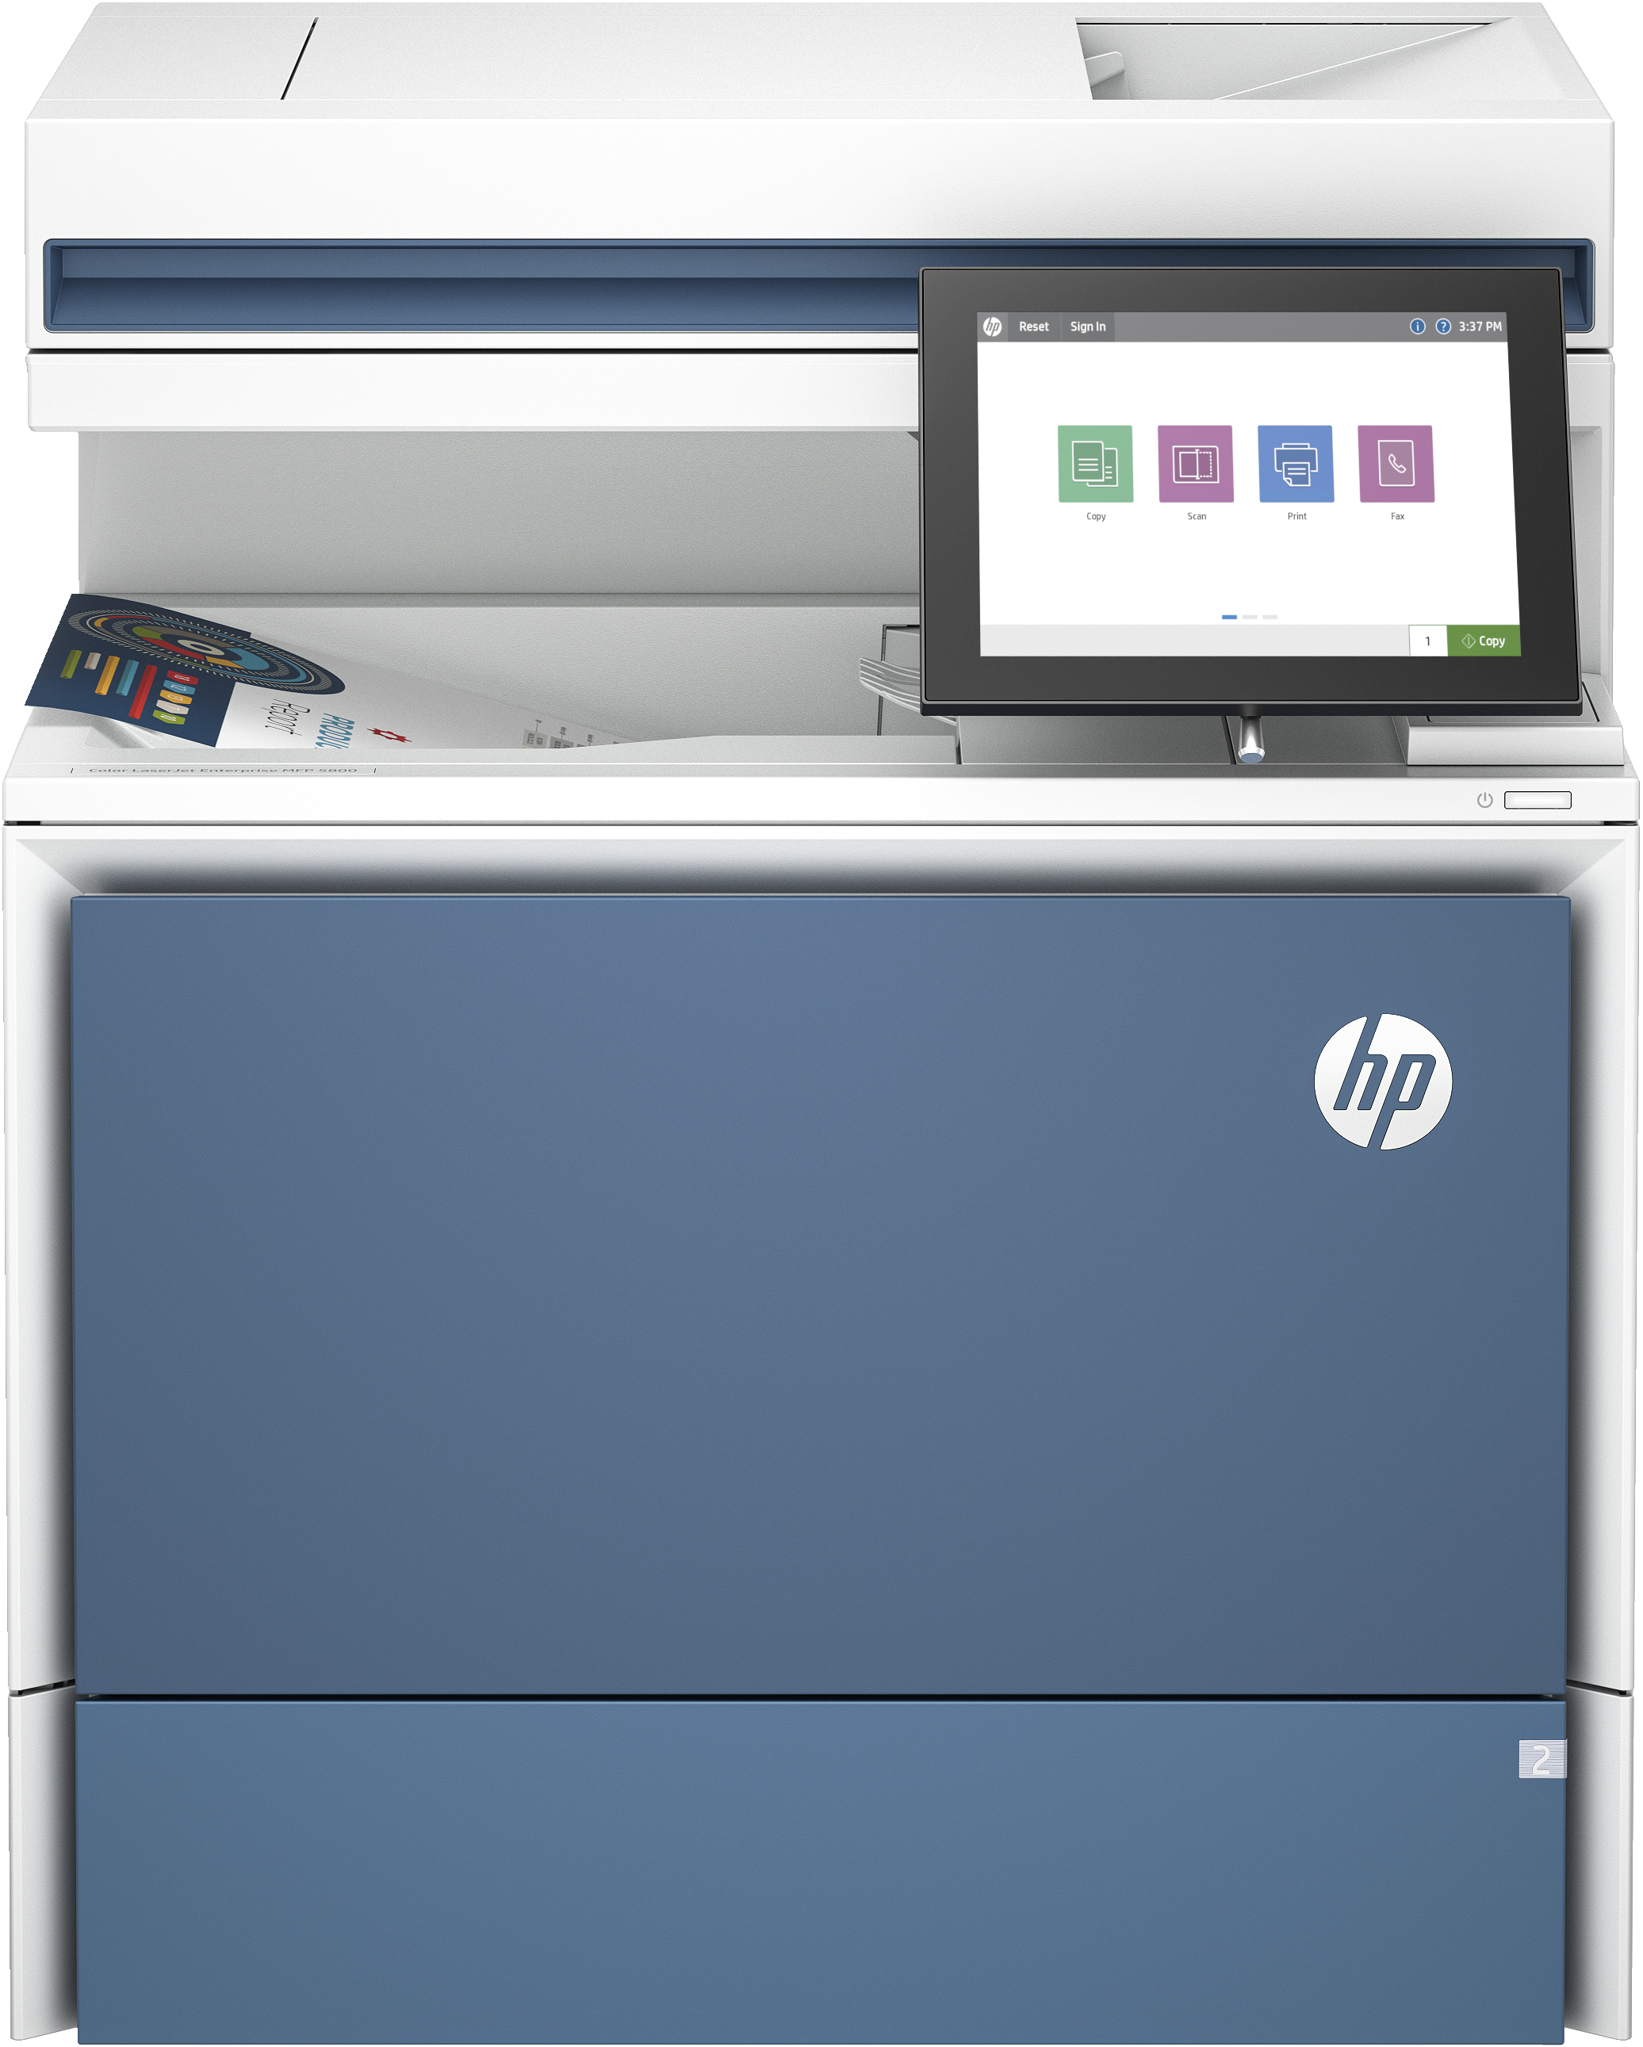 Bild von HP LaserJet Color Enterprise MFP 5800dn Drucker - Drucken - Kopieren - Scannen - Faxen (optional) - Automatische Dokumentenzuführung; Optionale Fächer mit hoher Kapazität; Touchscreen; Tonerkartusche mit TerraJet - Laser - Farbdruck - 1200 x 1200 DPI - A4 - 